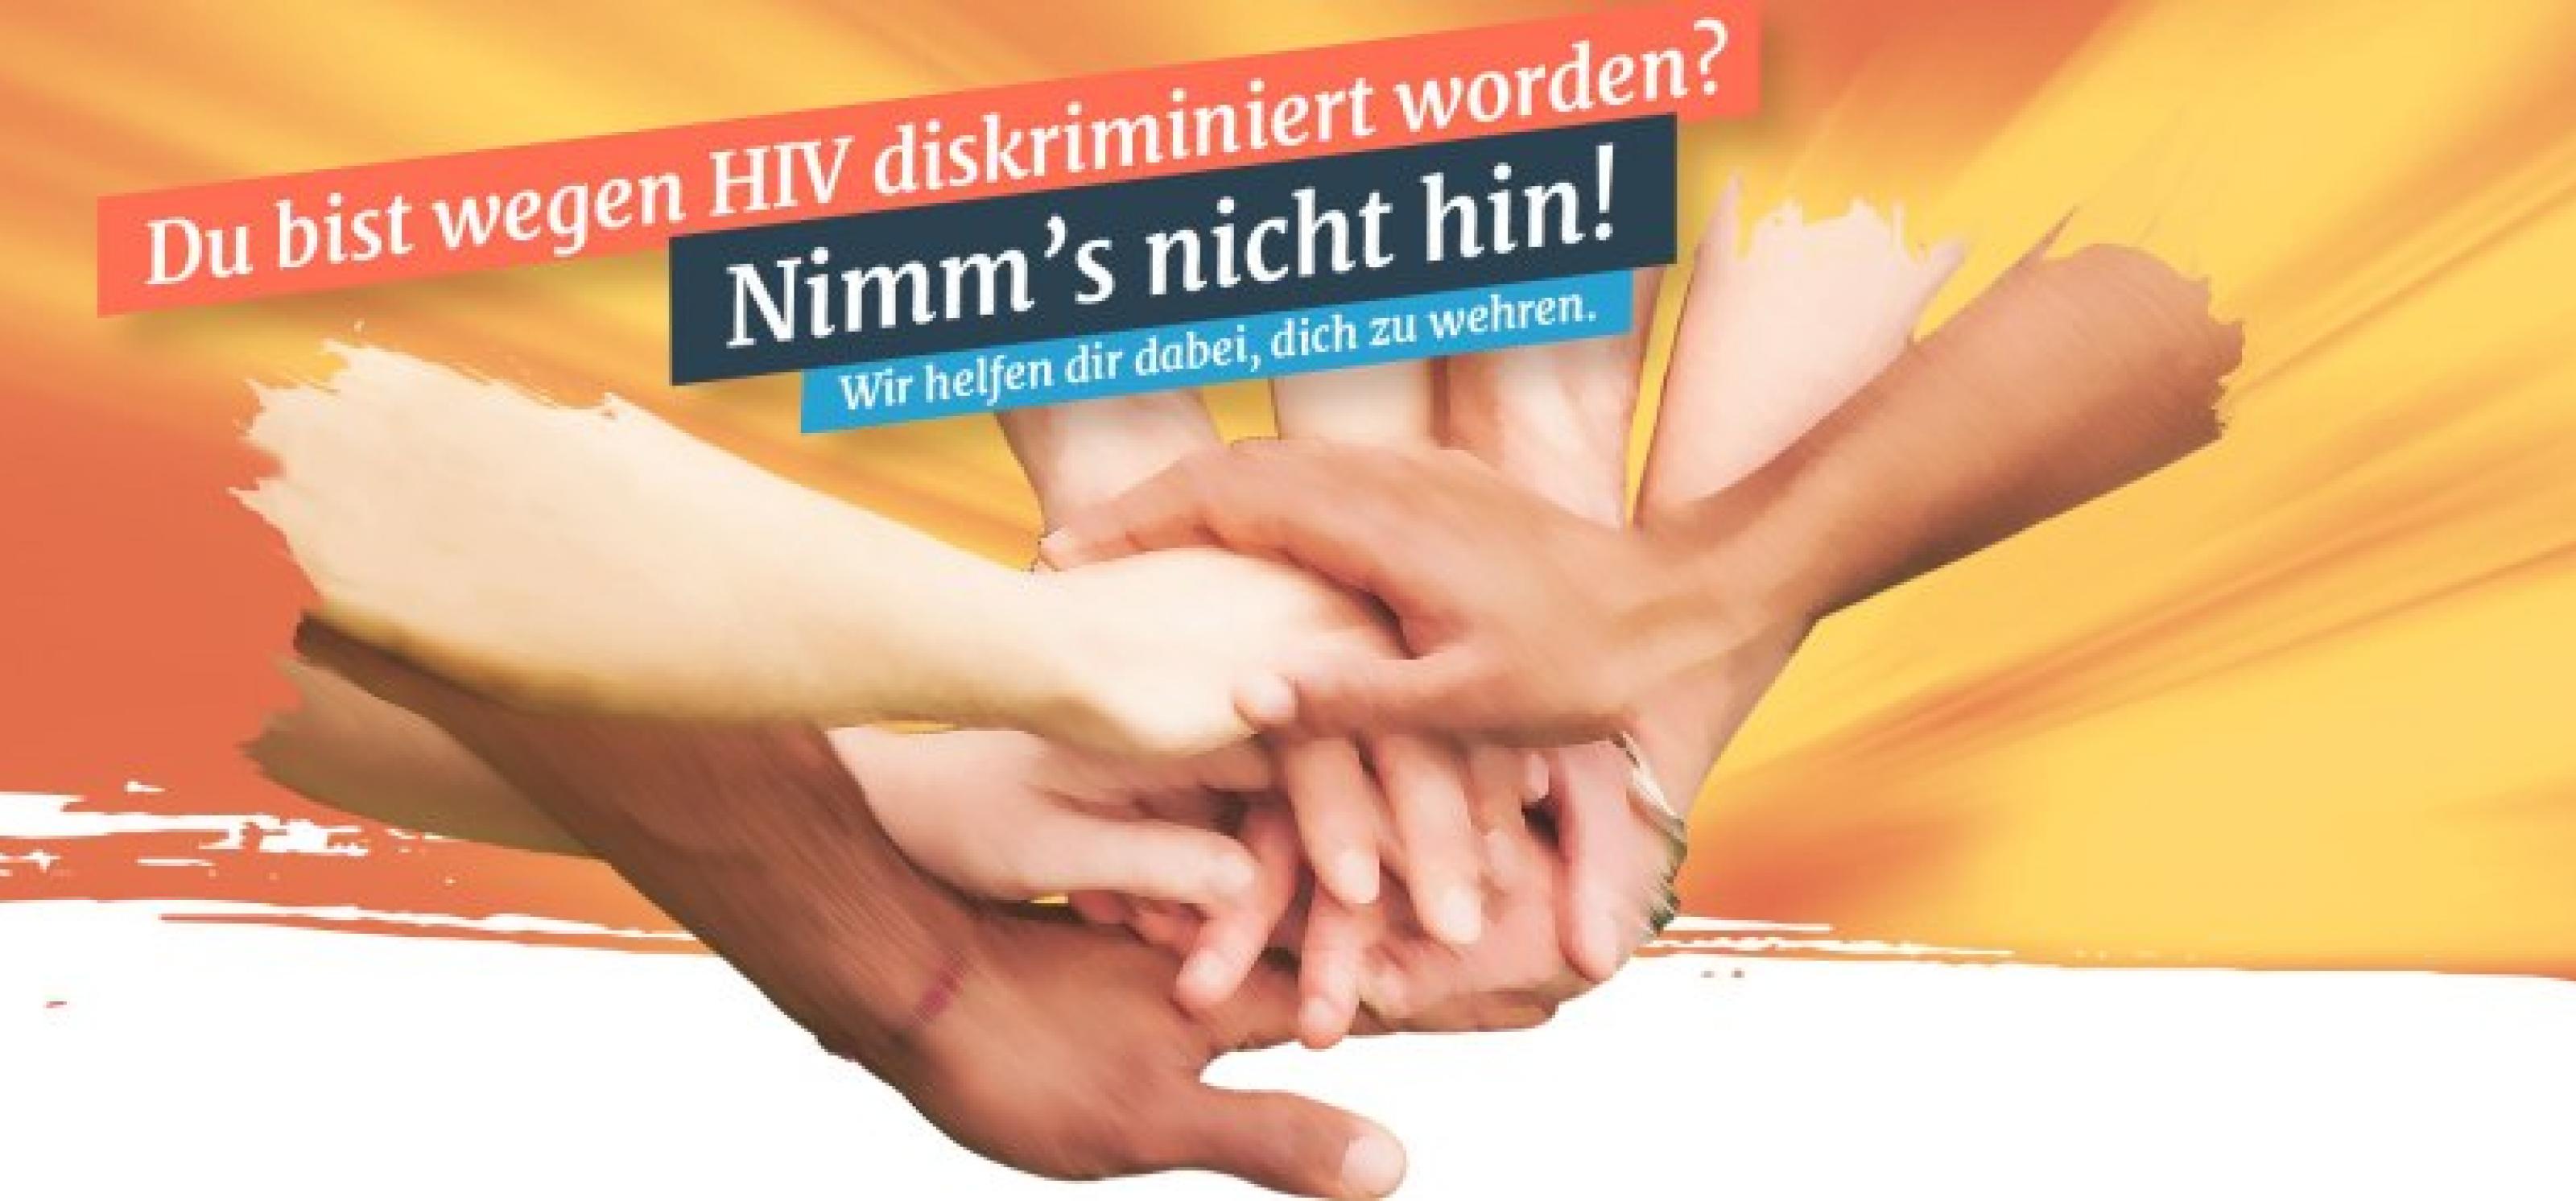 HIV-Diskriminierung: Startseite von hiv-diskriminierung.de